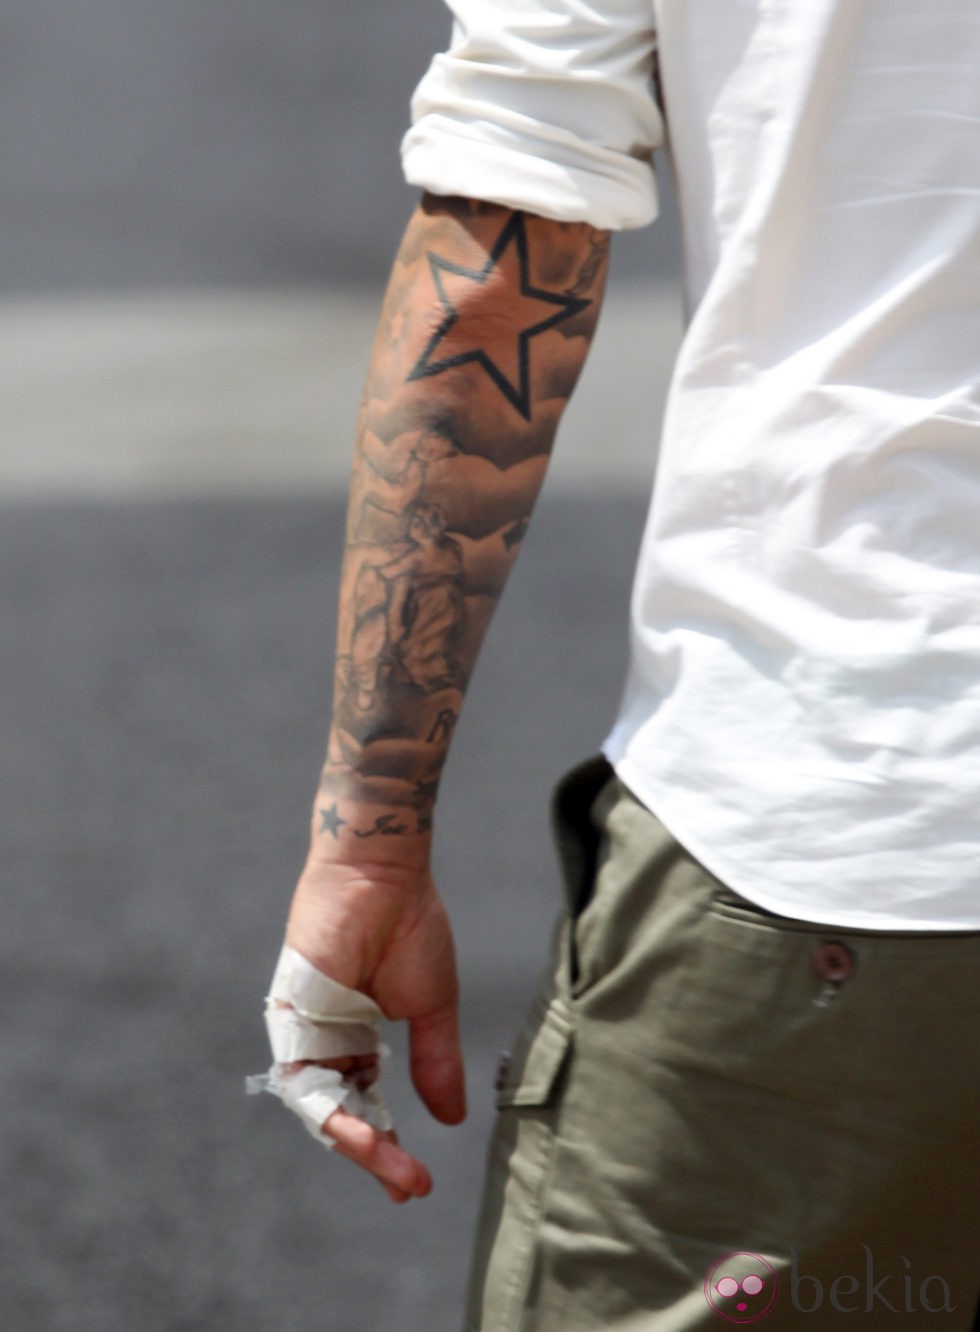 Guti recién tatuado el nombre de Romy en su mano